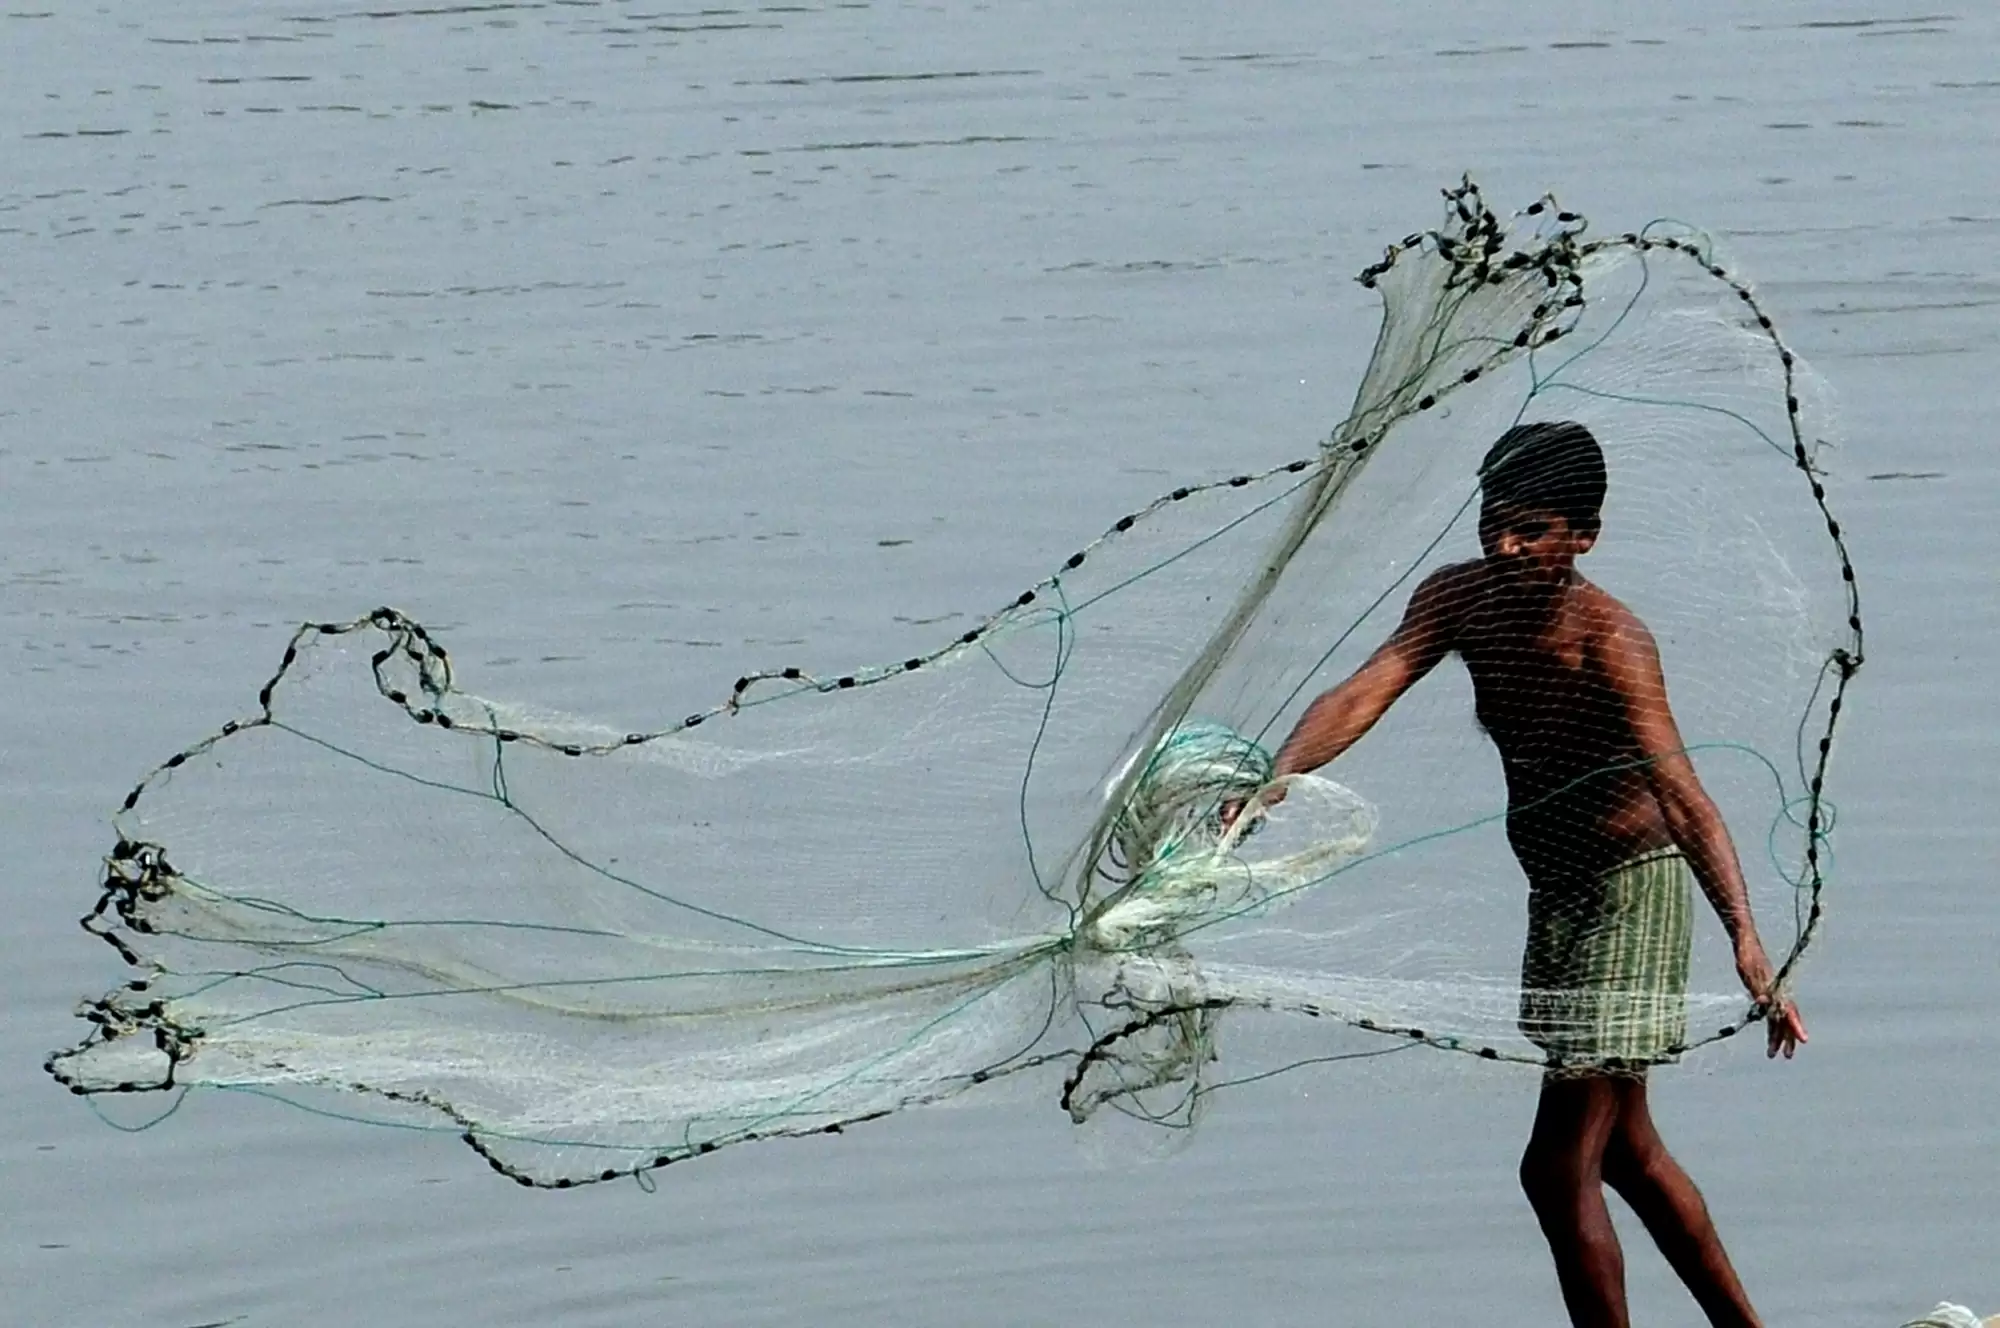 मछली पकड़ने के लिए आधुनिक बंदरगाहों और लैंडिंग सेंटरों के लिए 7,500 करोड़ रुपये मंजूर